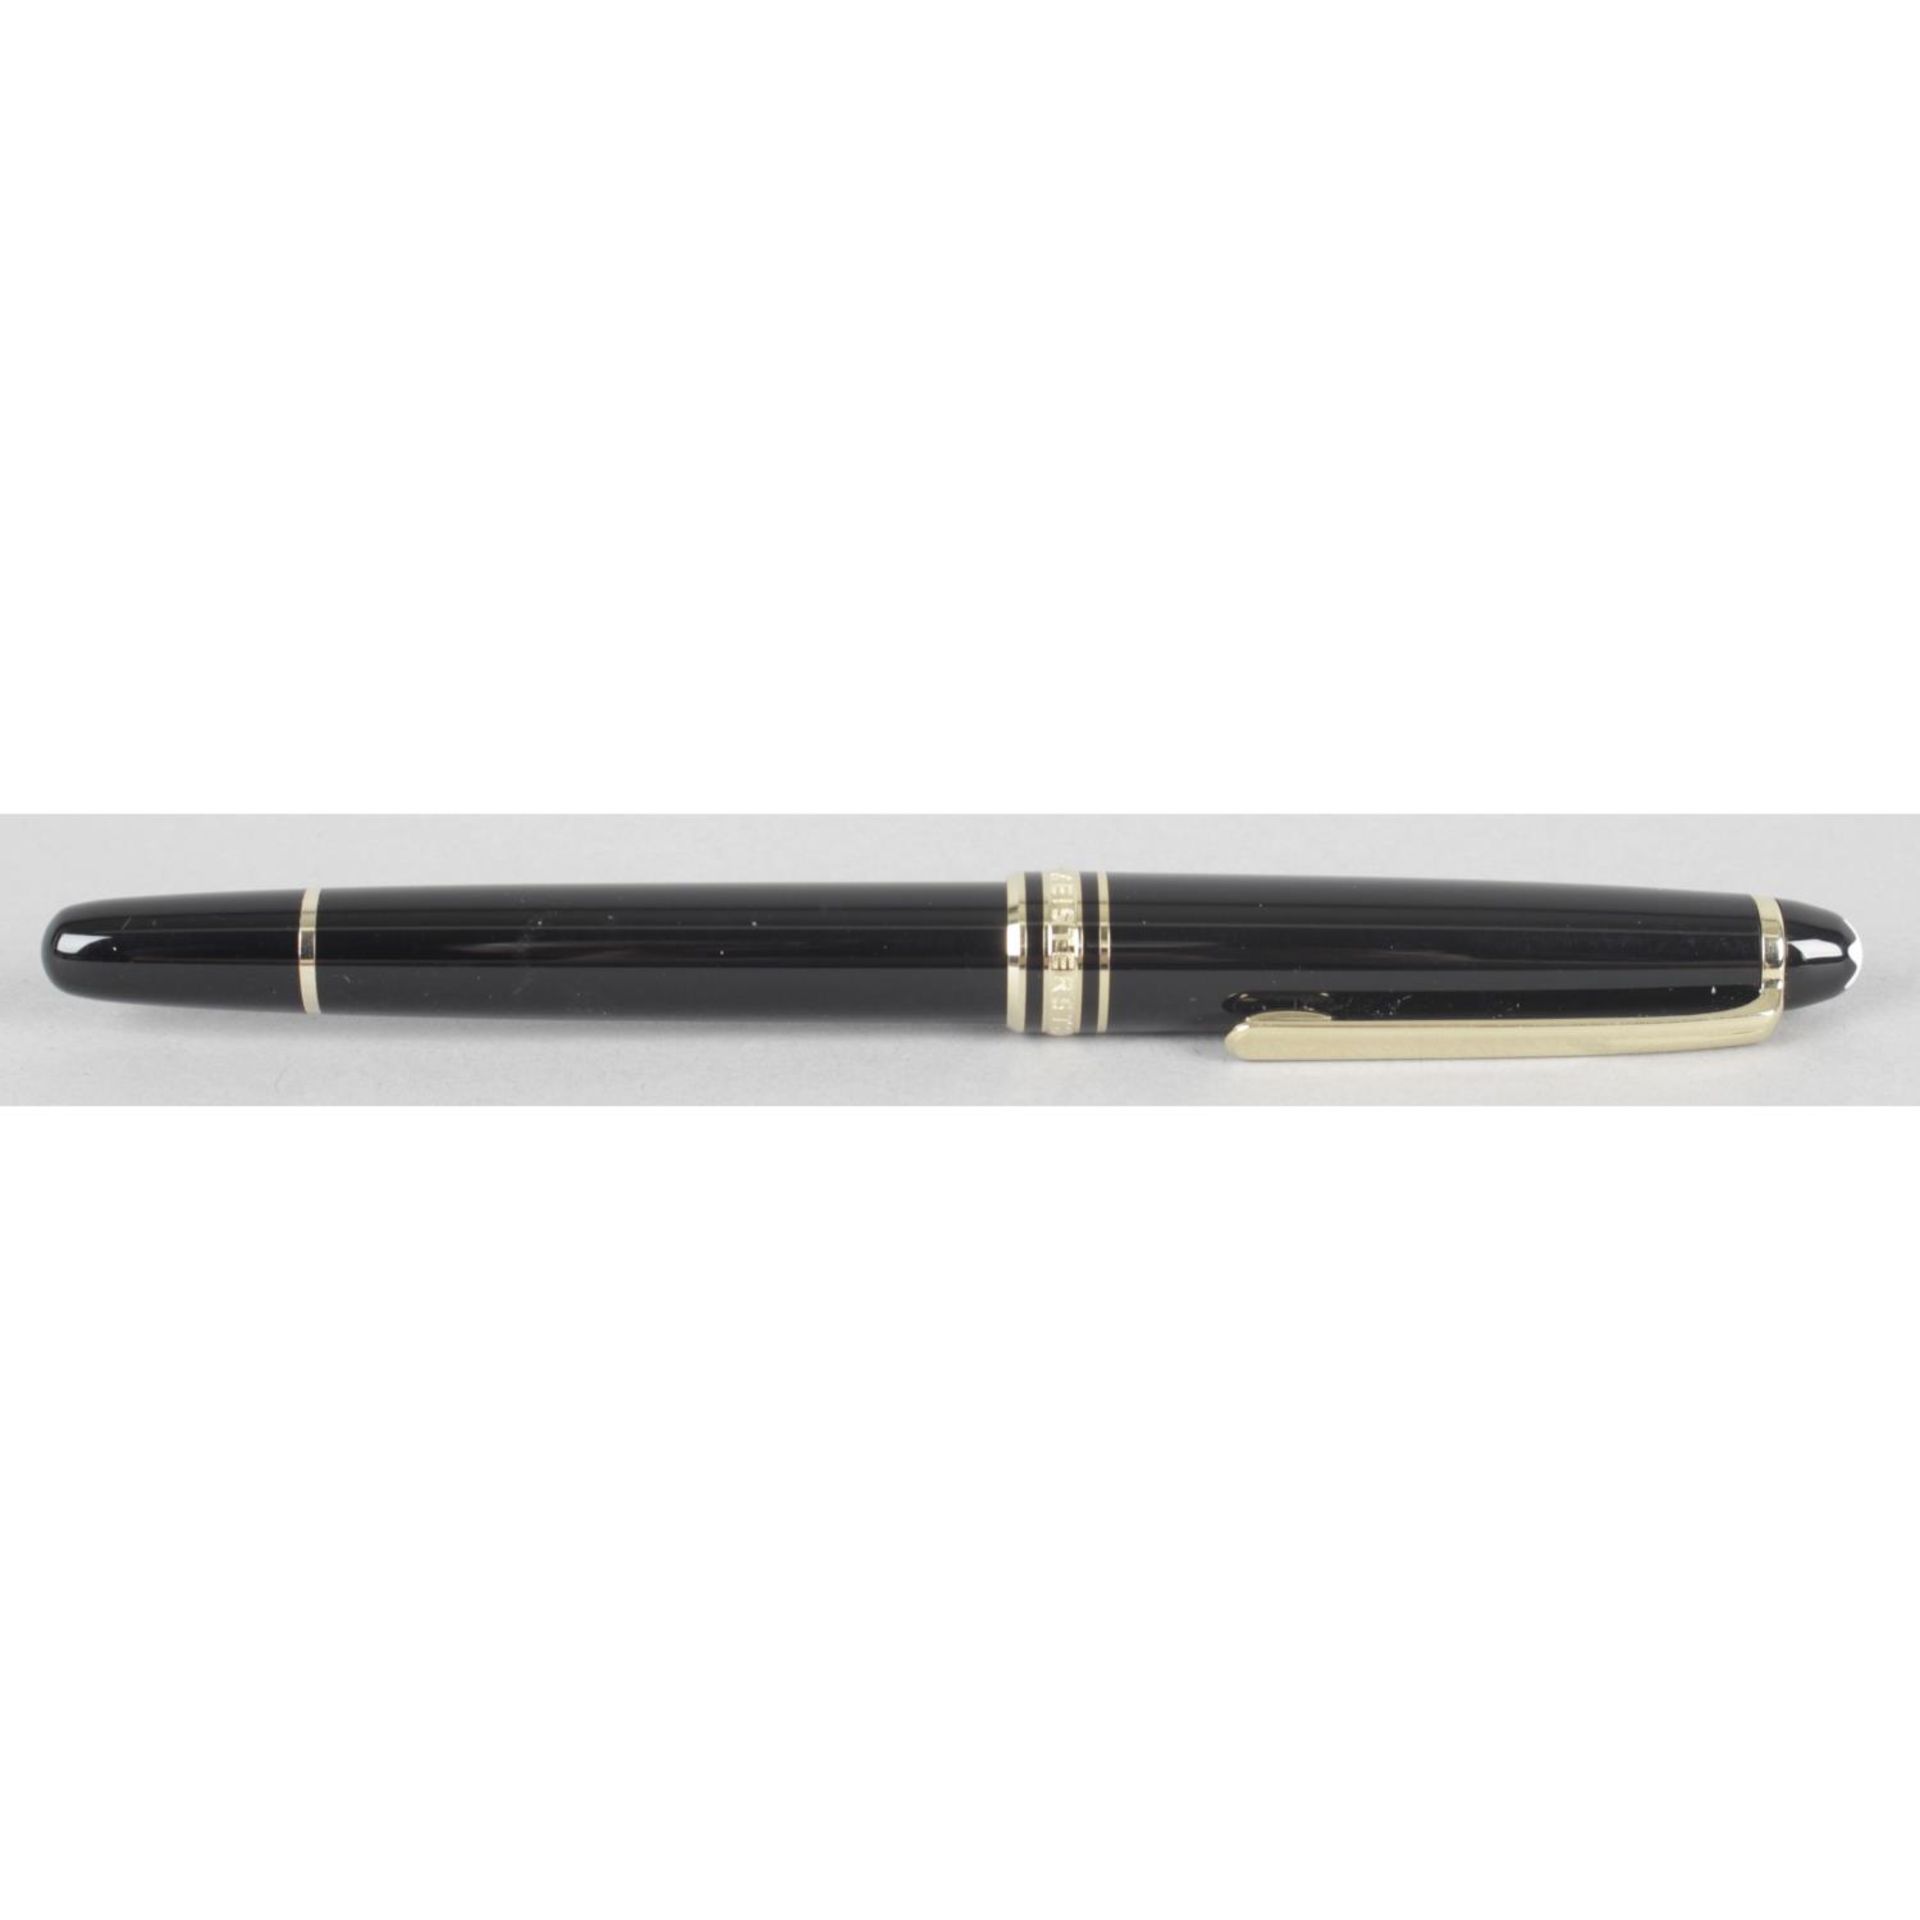 A Montblanc Meisterstuck ballpoint pen,